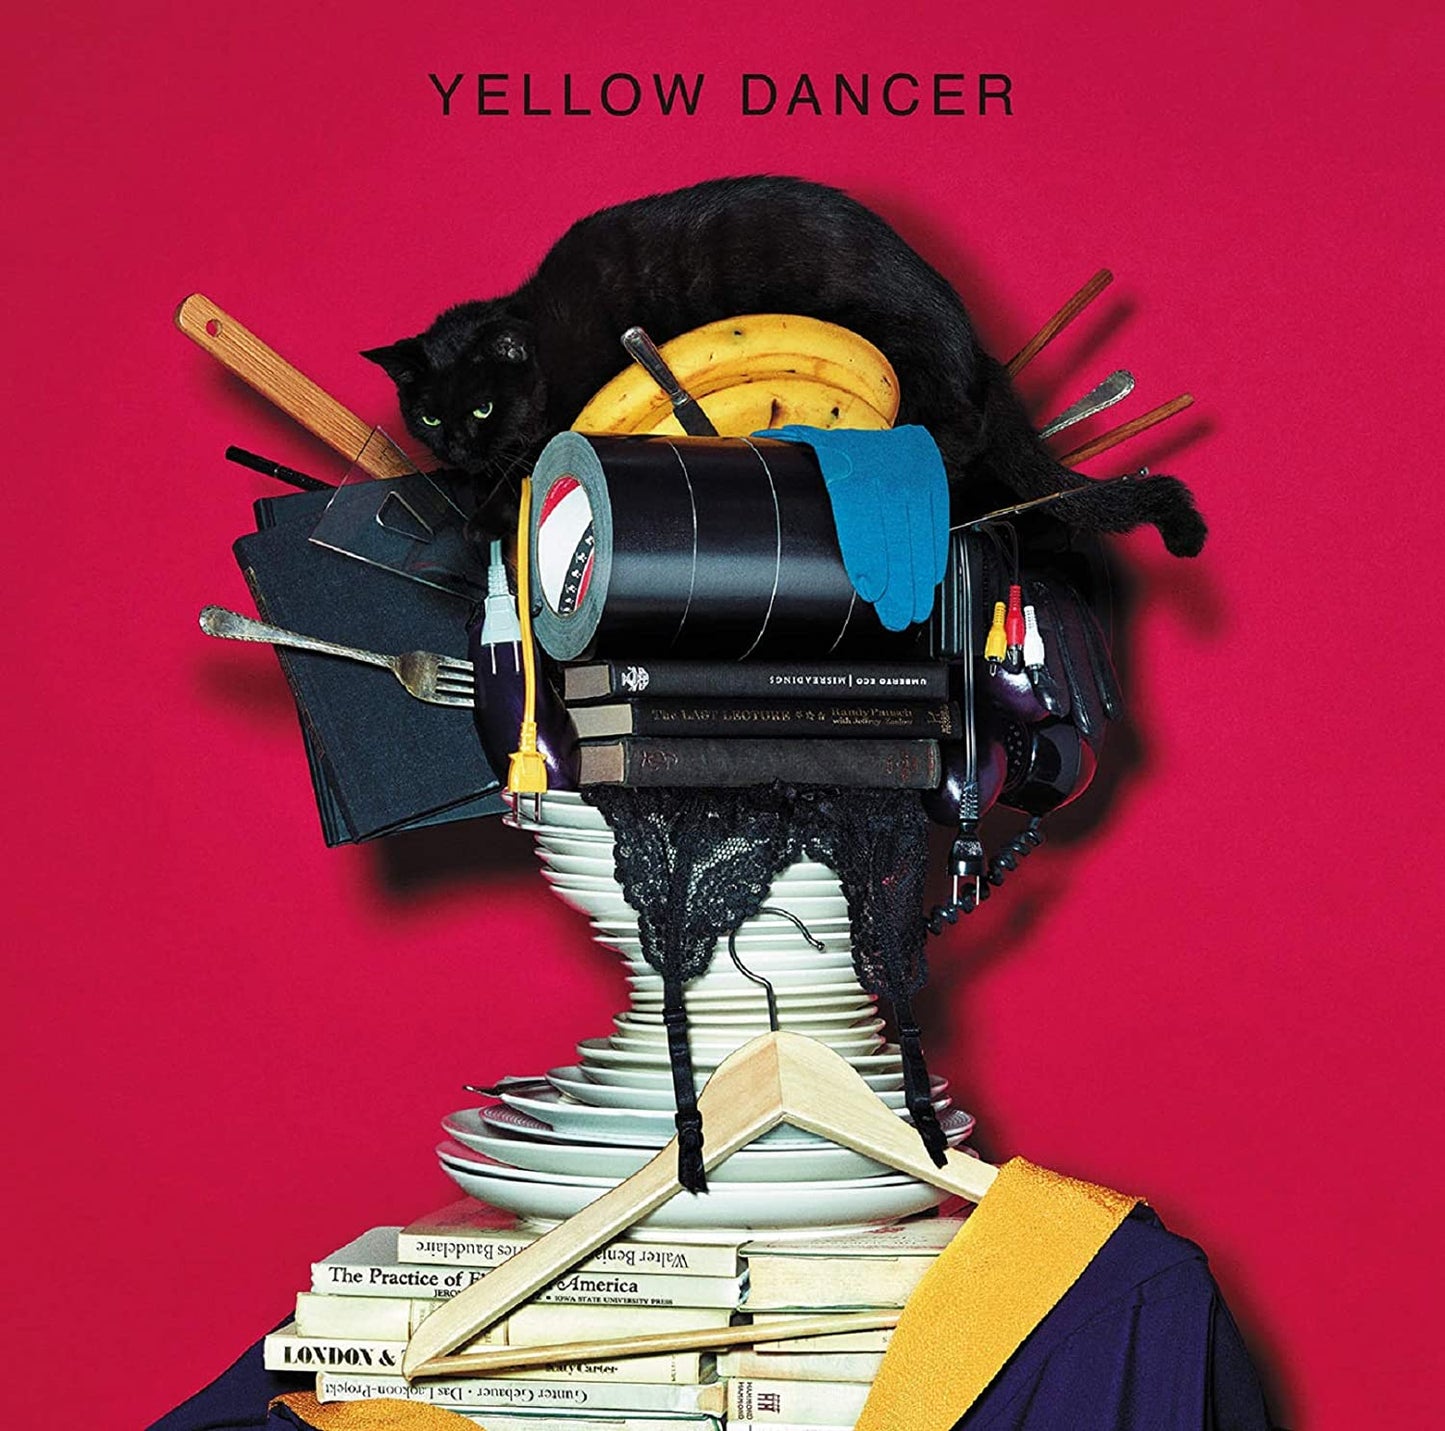 日本唱作人星野源 原創專輯 黑膠2張 -- "Yellow Dancer"，"Pop Virus"